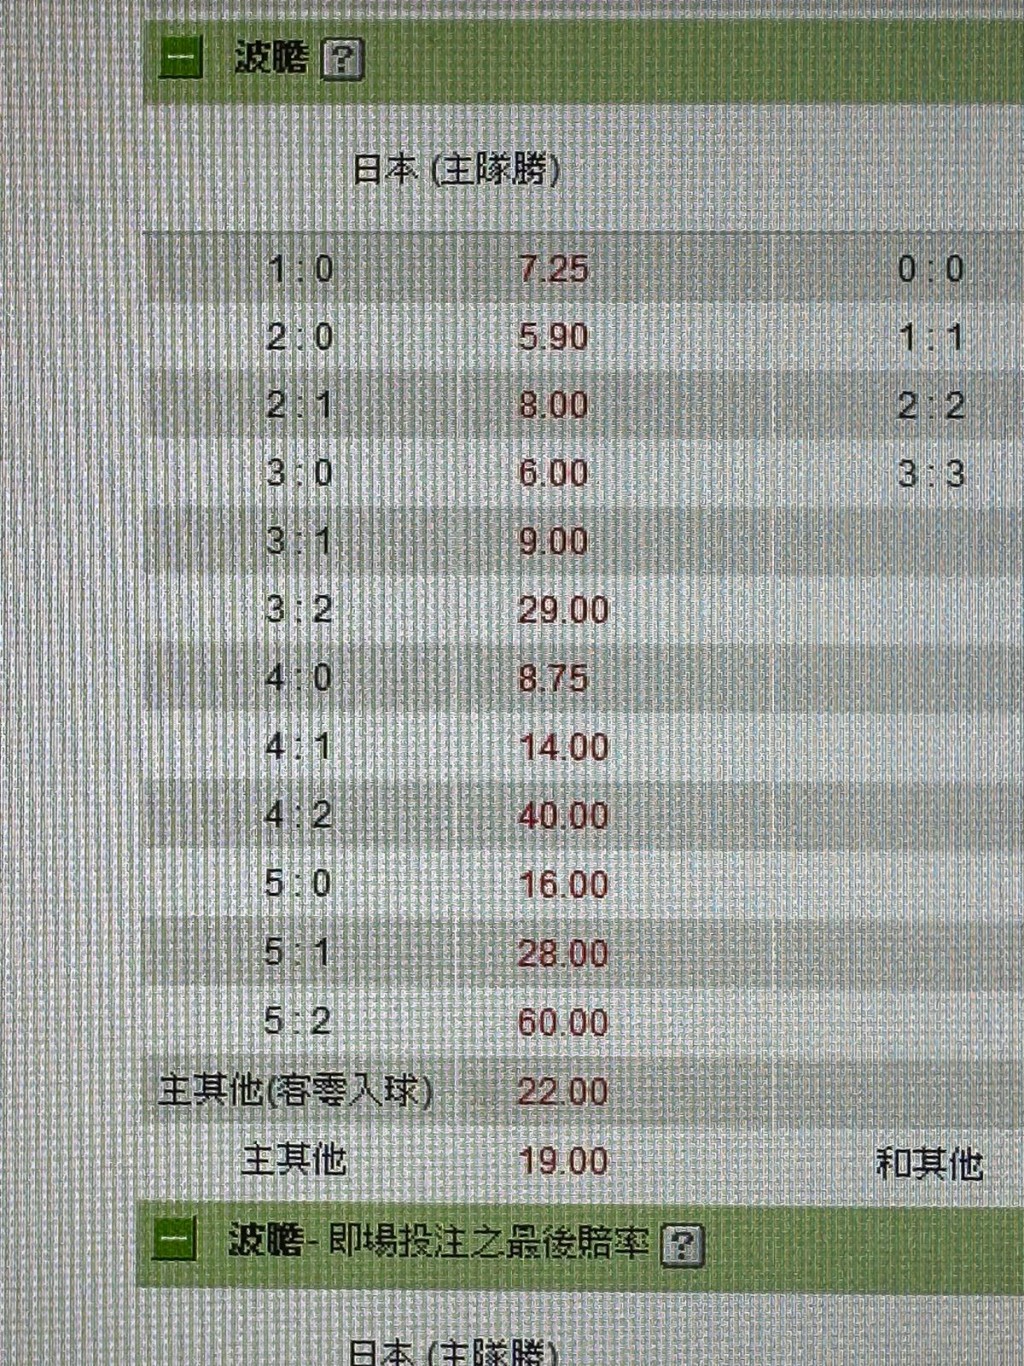 今晚足智彩編號FB2500是日本（主）對薩爾瓦多（客），「主其他（客零入球） 」是22倍，「主其他」是19倍。